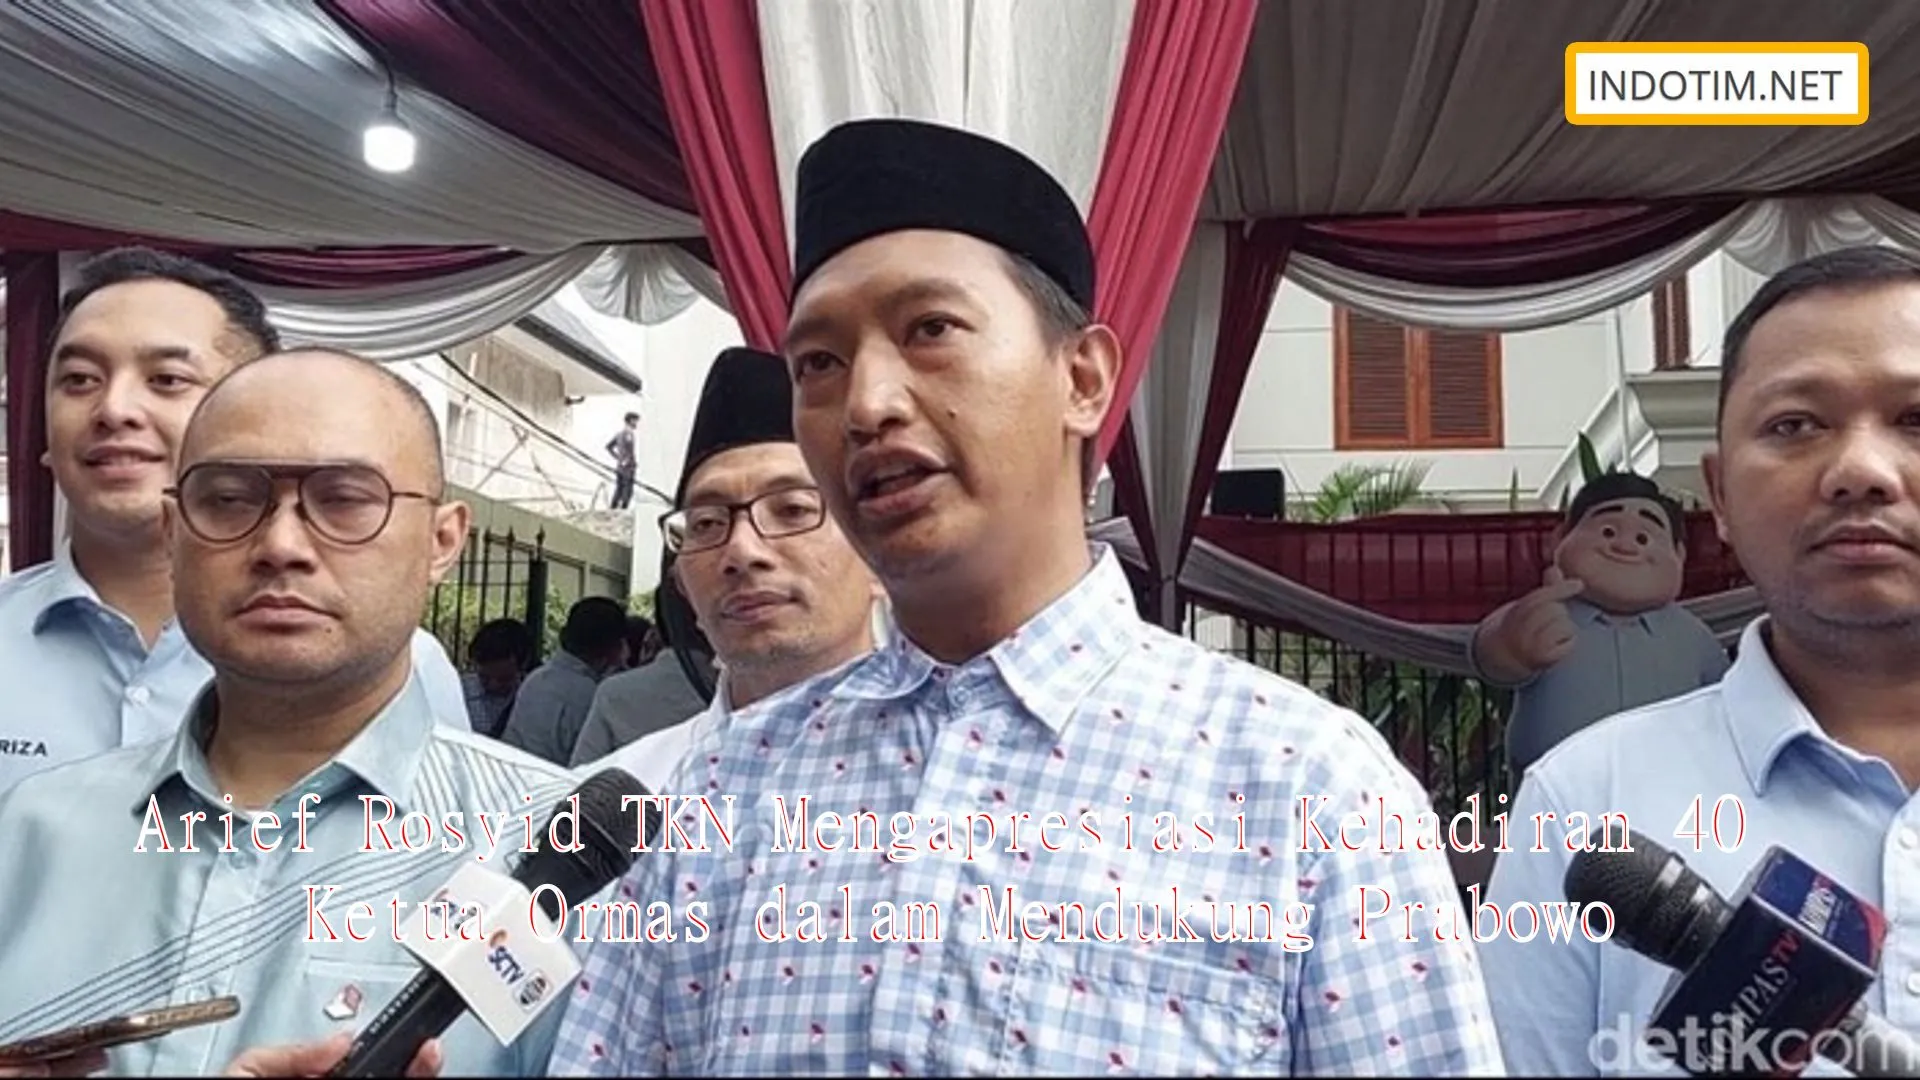 Arief Rosyid TKN Mengapresiasi Kehadiran 40 Ketua Ormas dalam Mendukung Prabowo